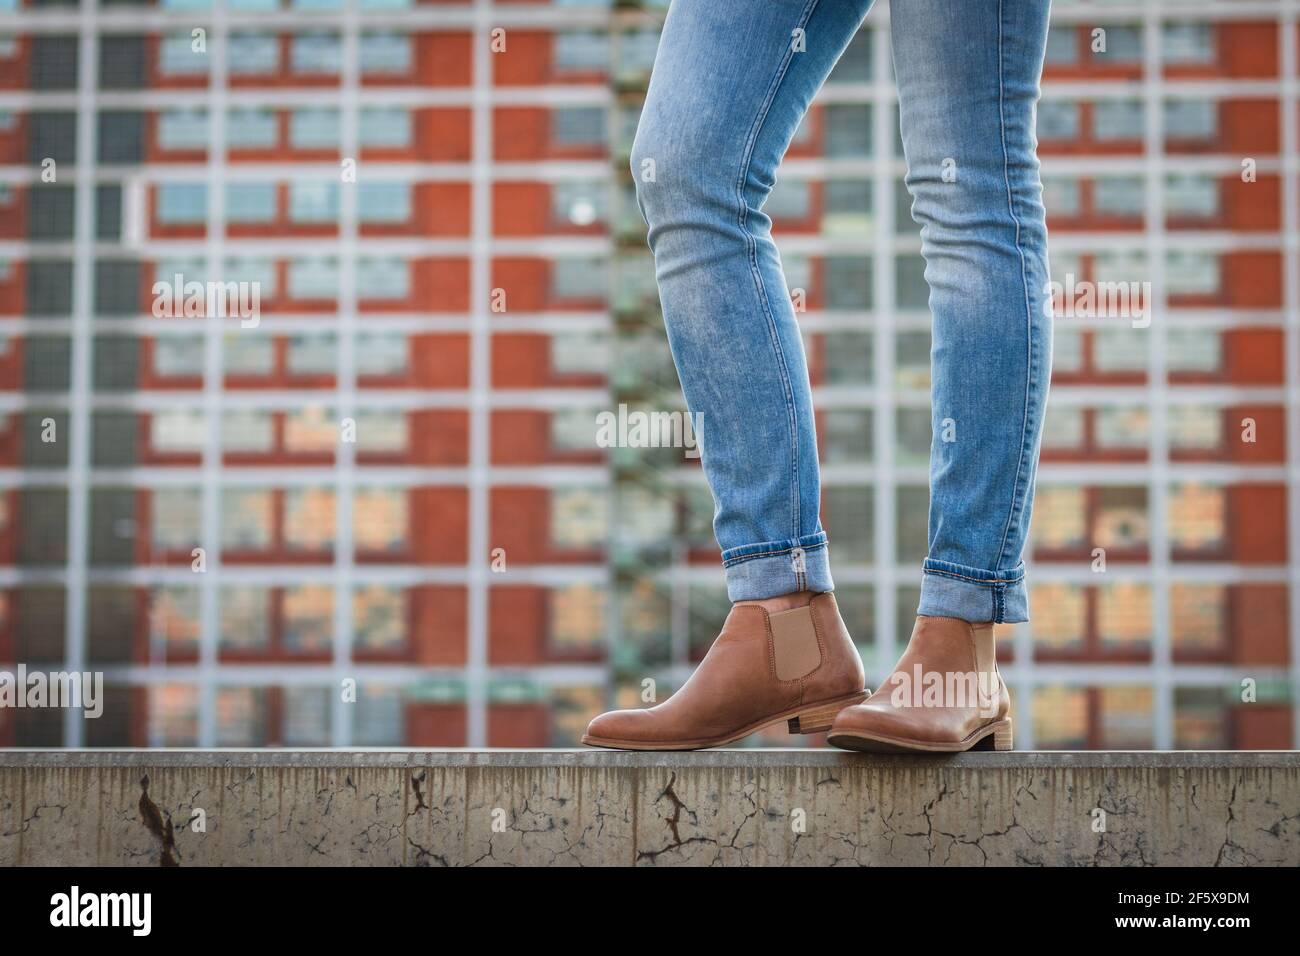 Modische schlanke Beine tragen Jeans und Lederschuhe in der Stadt. Moderne  Architektur als Hintergrund. Stilvolle Frau trägt legere Kleidung auf wa  stehen Stockfotografie - Alamy